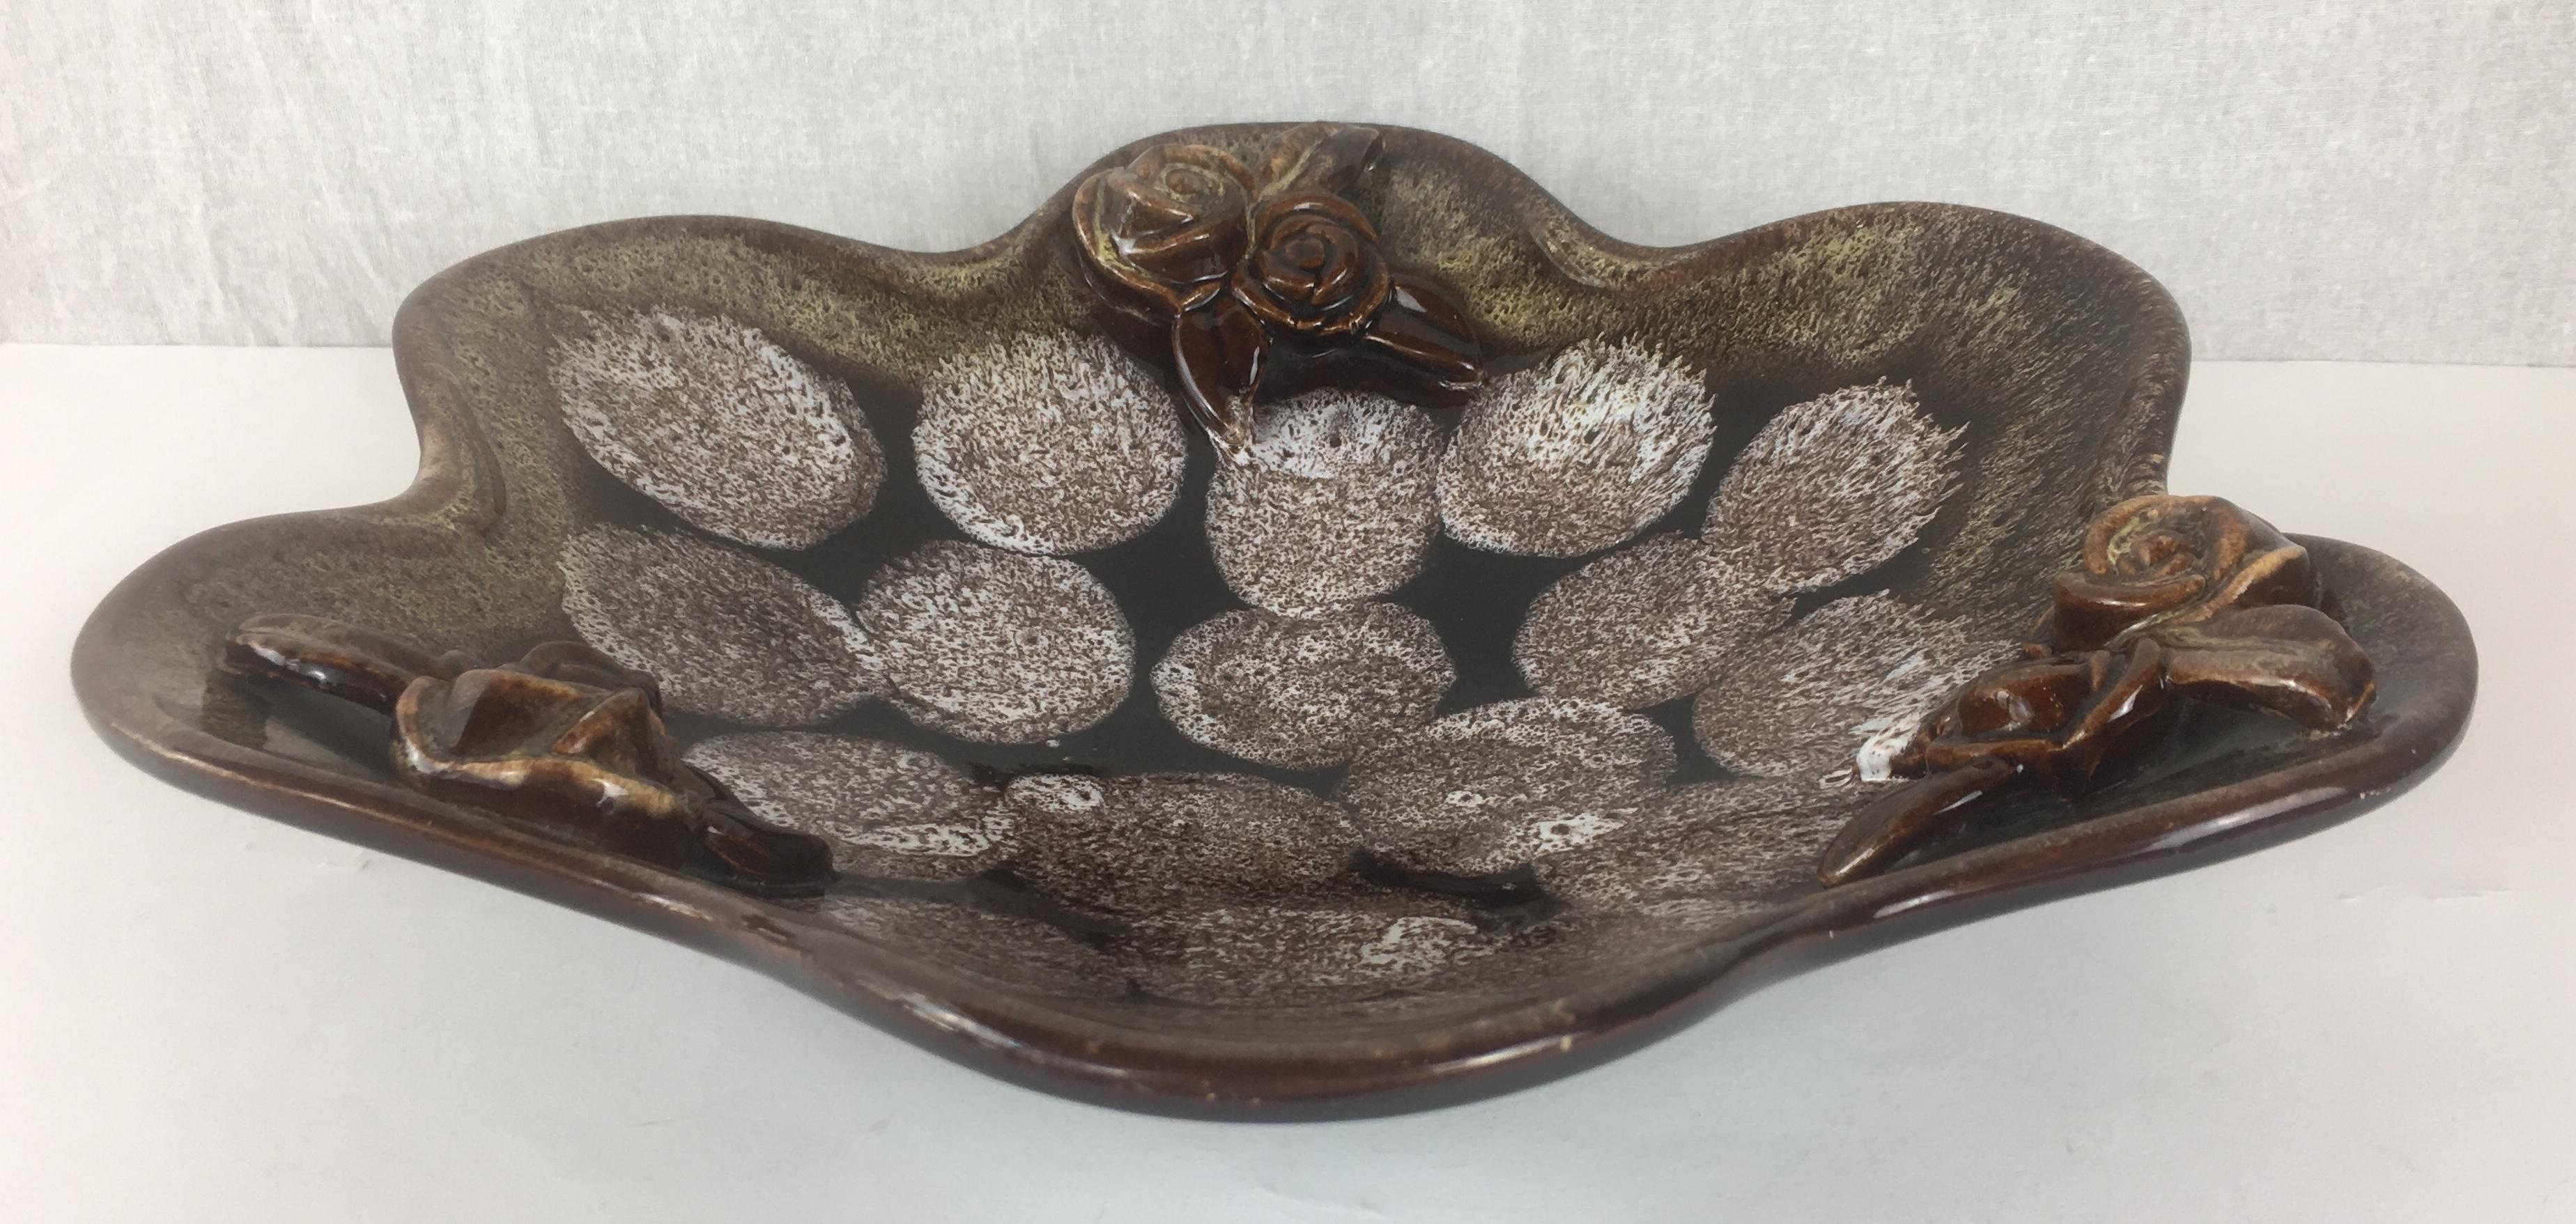 Eine feine dekorative Schale mit schönen Beige- und Brauntönen. Diese Keramikschale aus der Mitte des Jahrhunderts in Erdtönen ist ein wunderschönes Dekorationsobjekt, das das Auge erfreut und interessante florale Details aufweist. 

Markiert